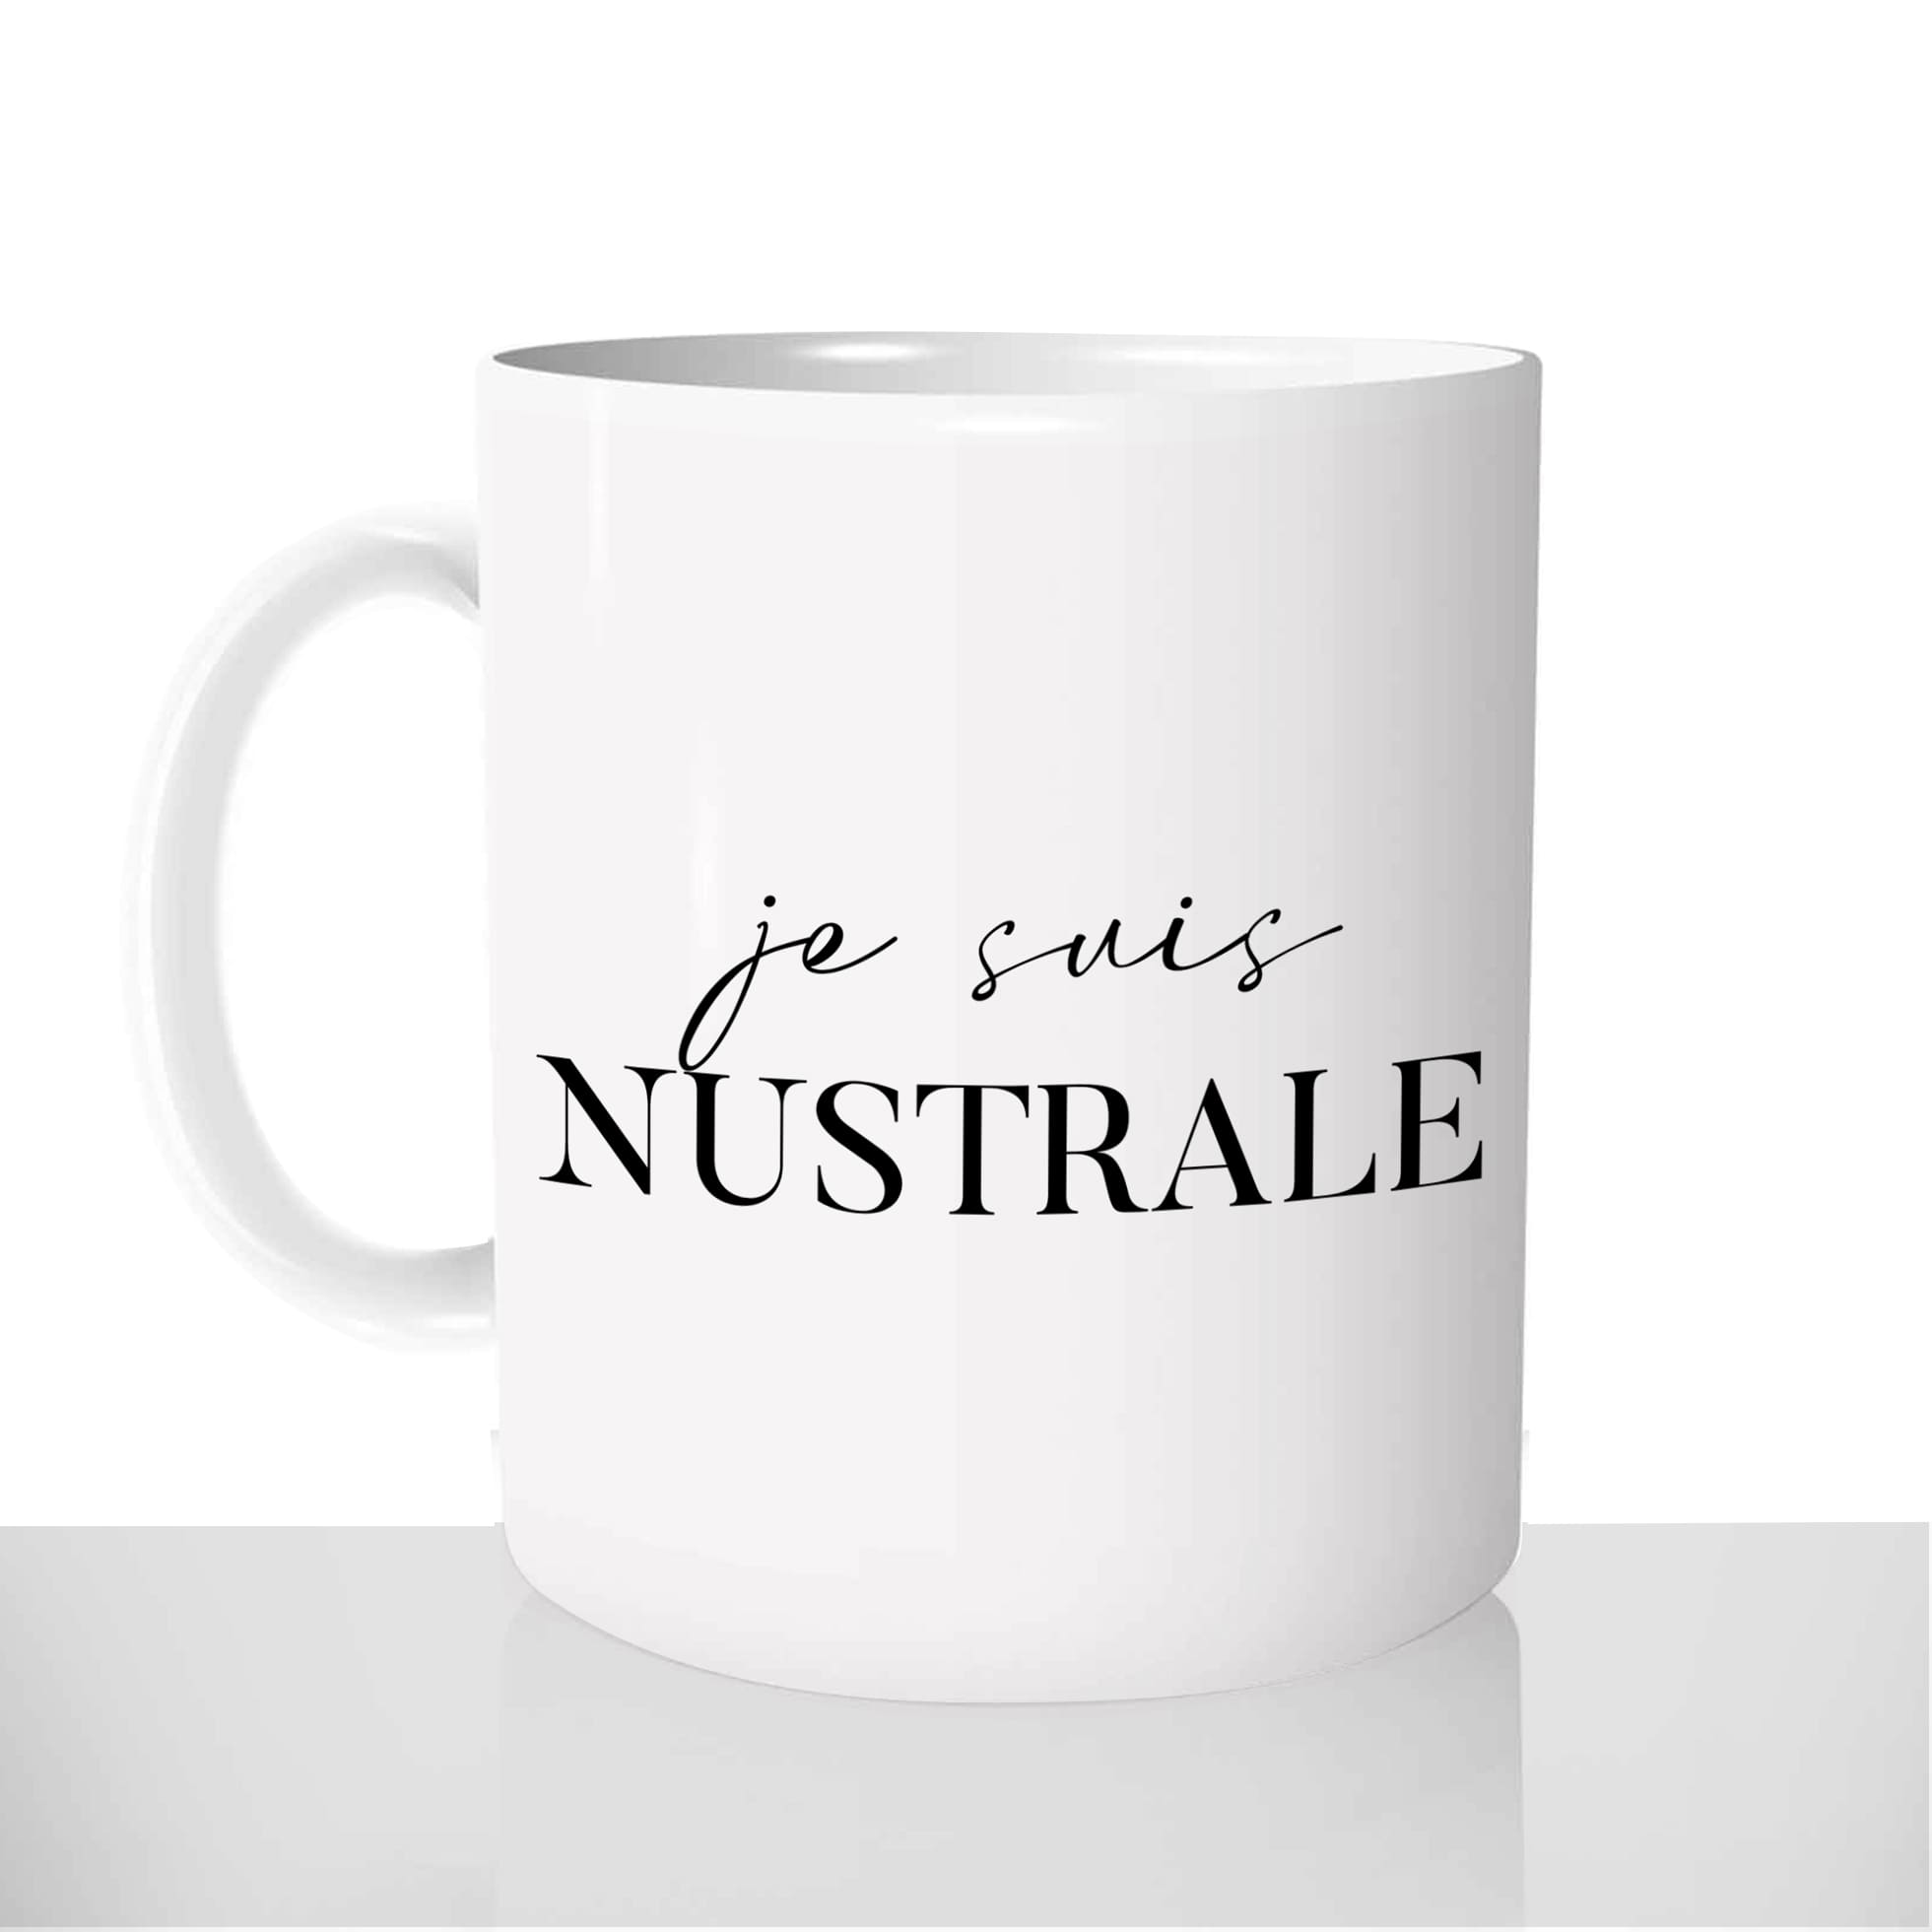 mug-blanc-brillant-personnalisé-offrir-je-suis-nustrale-corse-corsica-fun-personnalisable-idée-cadeau-original